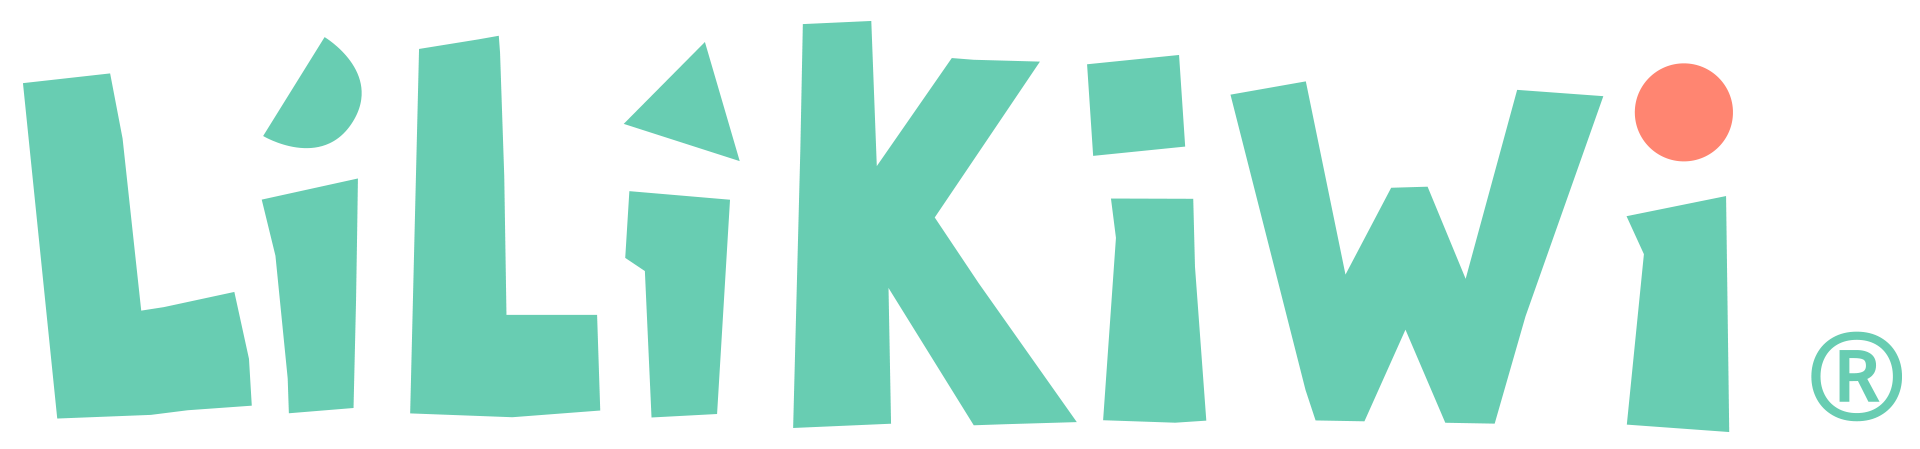 logo LILIKIWI